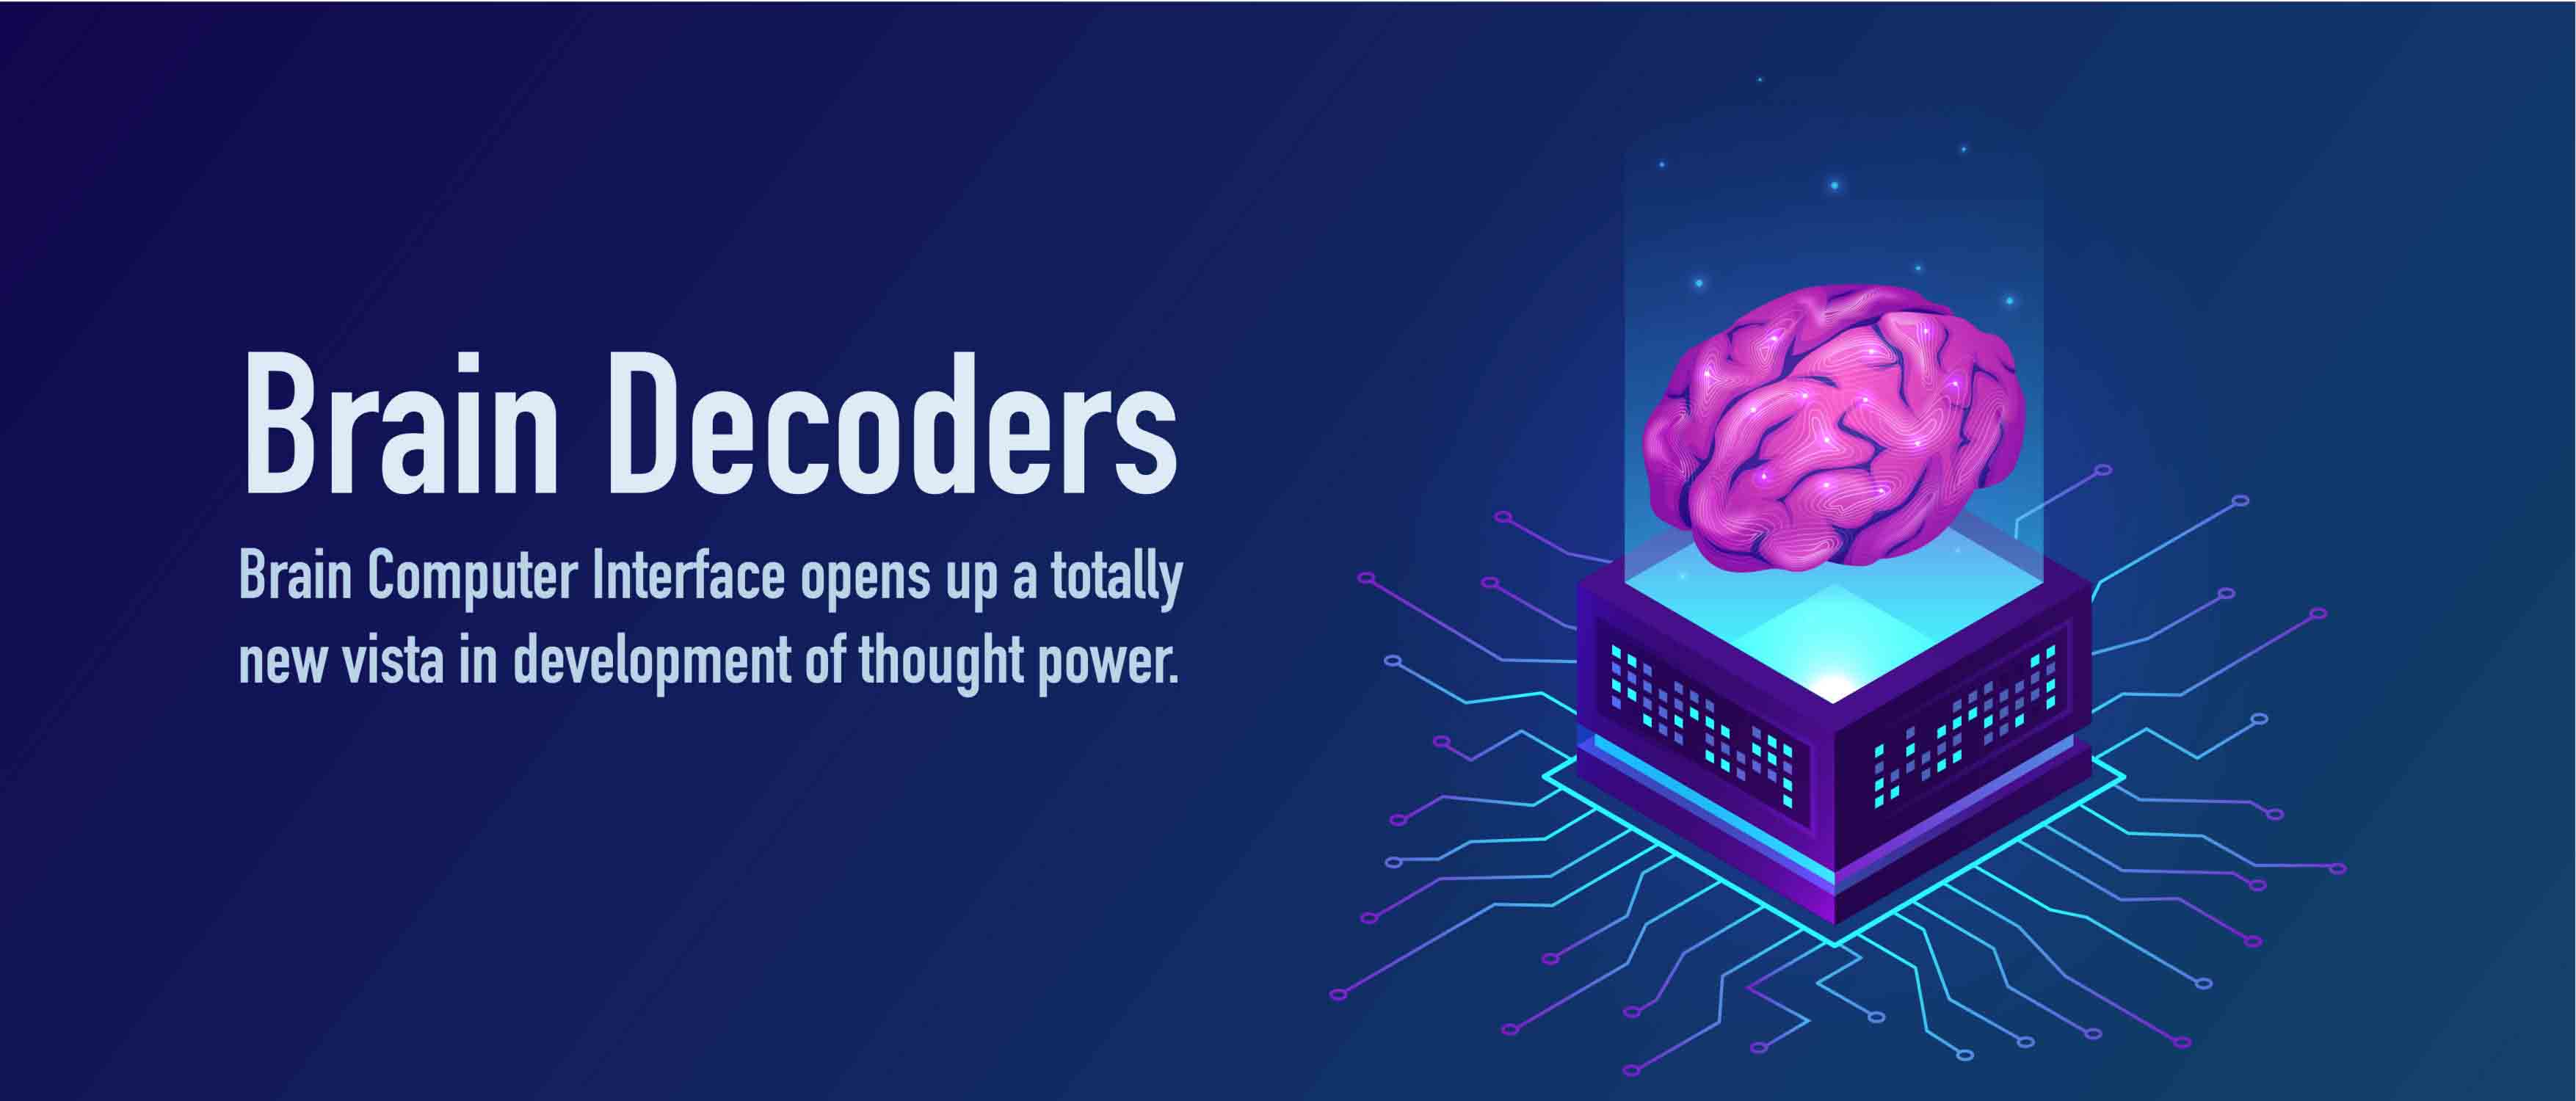 Brain Decoders